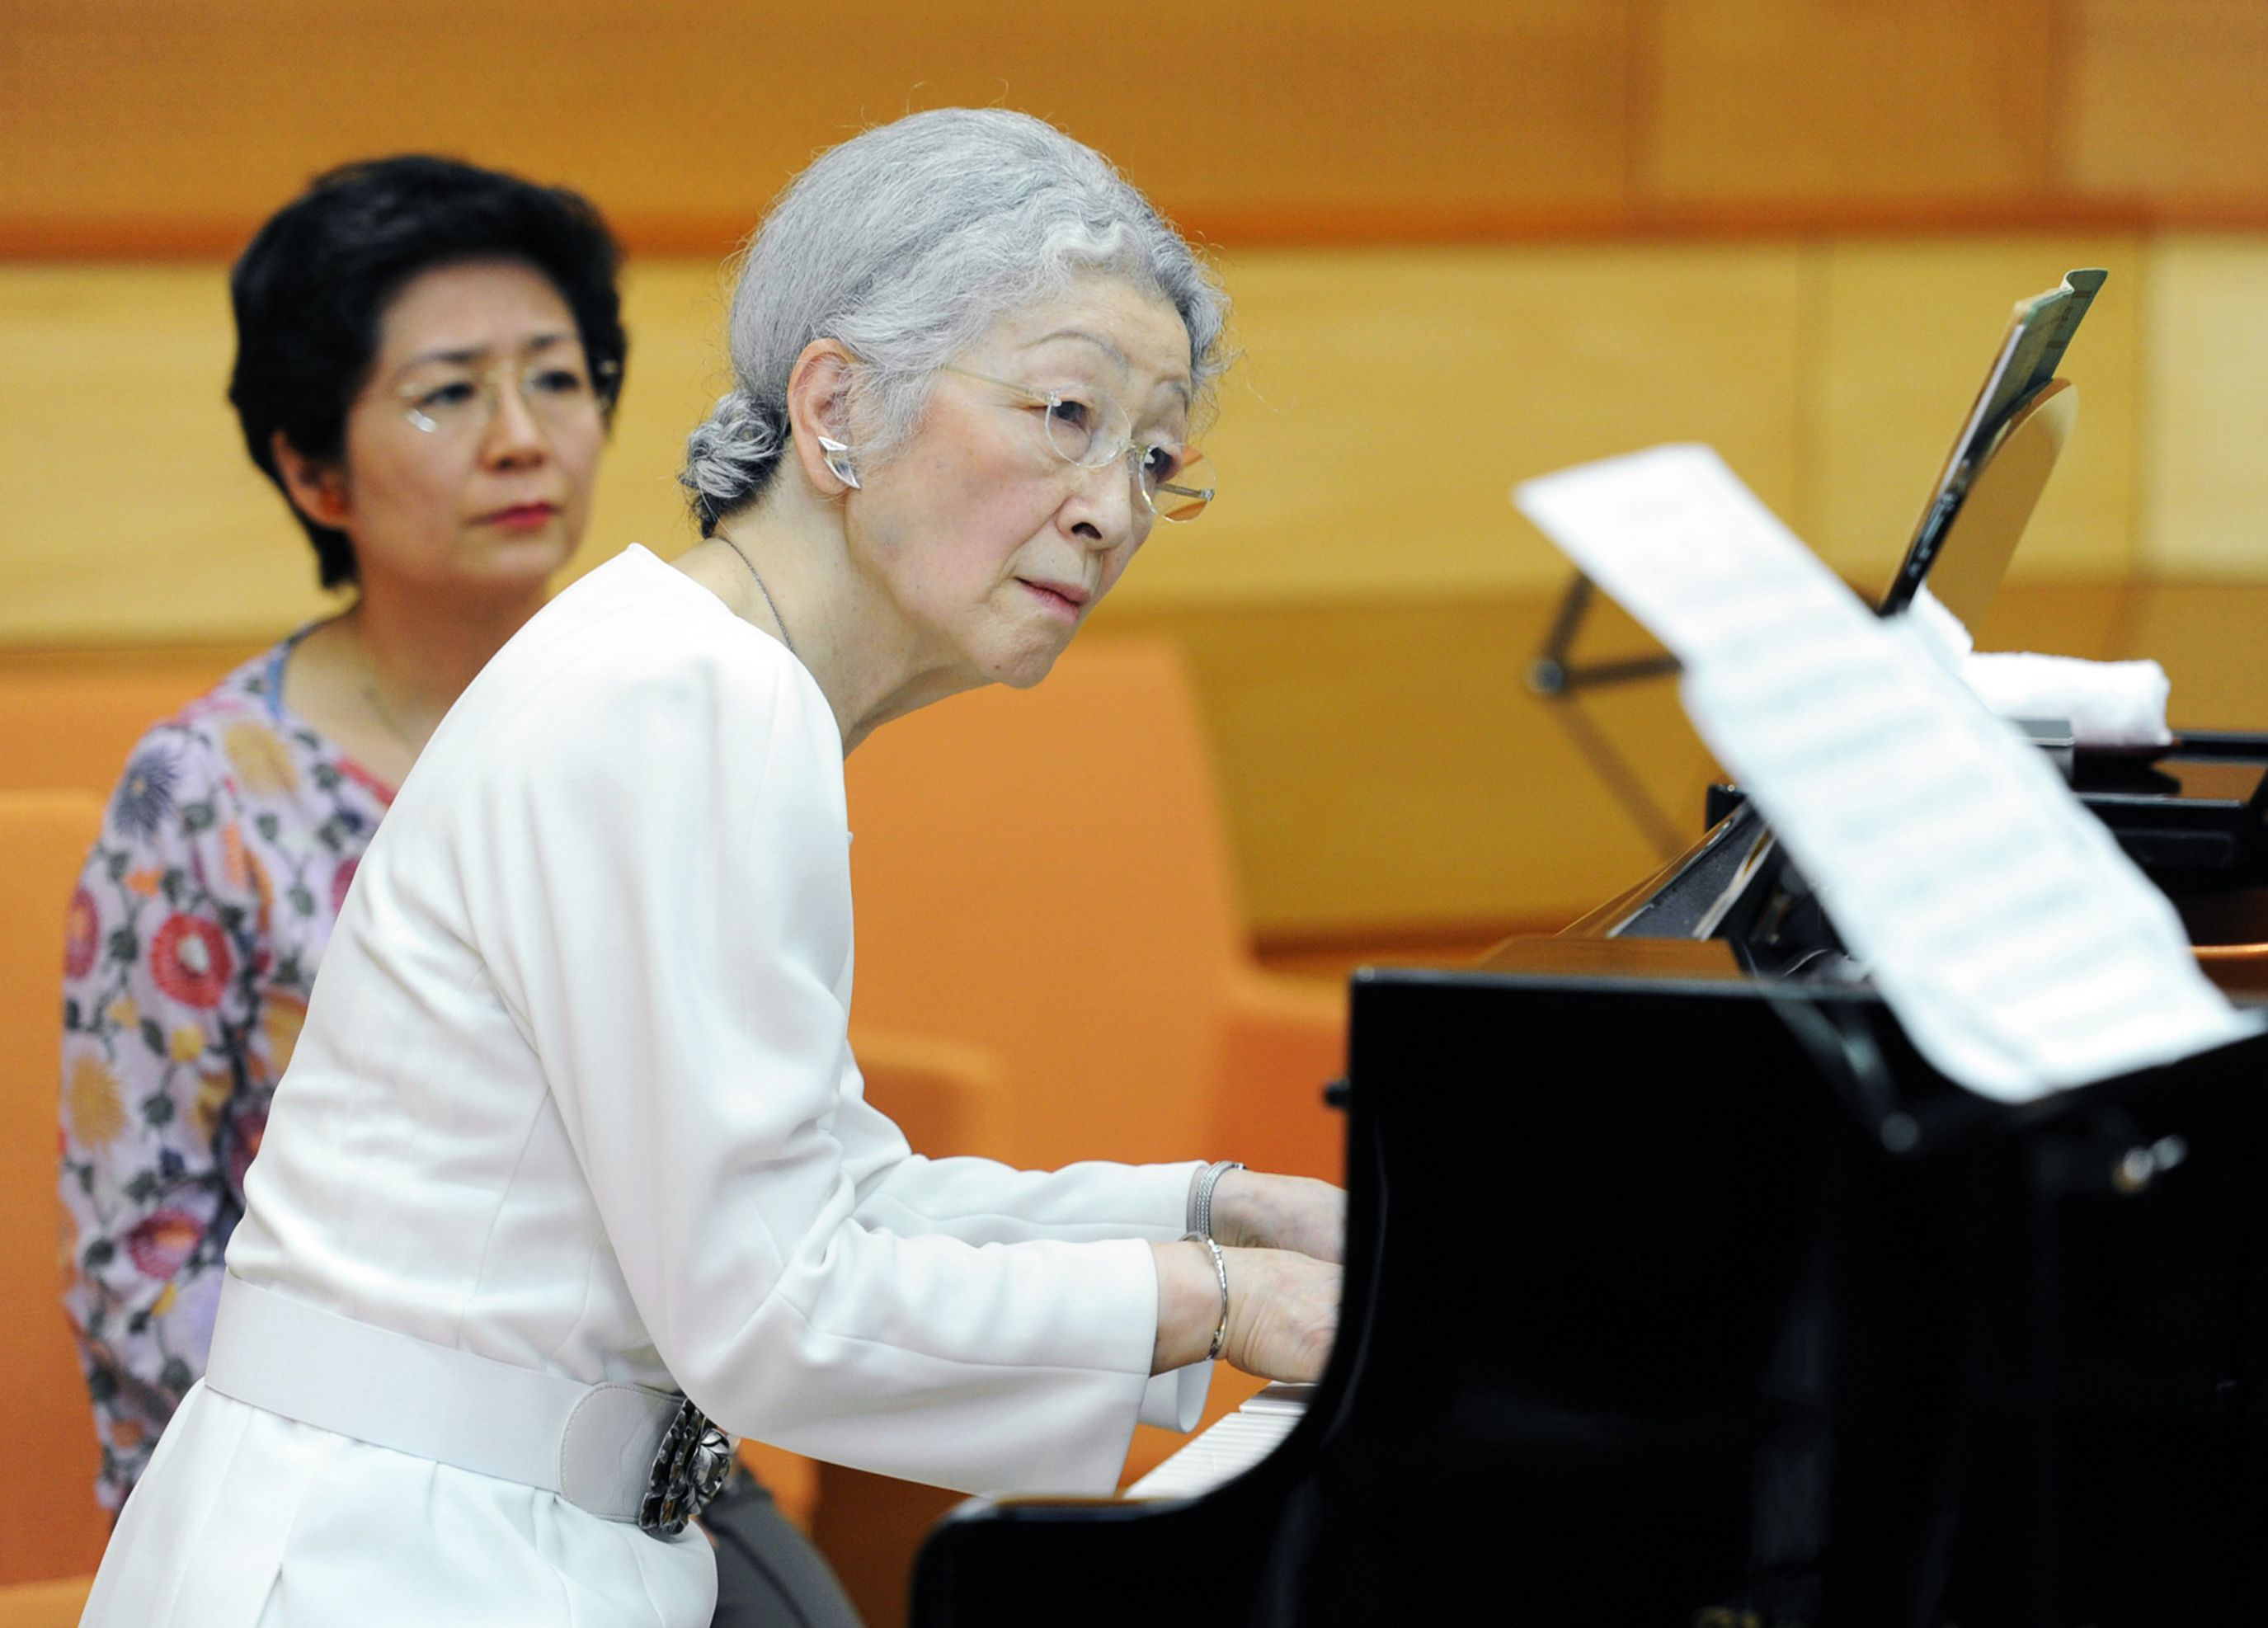 上皇后美智子さまが愛した「天使のピアノ」